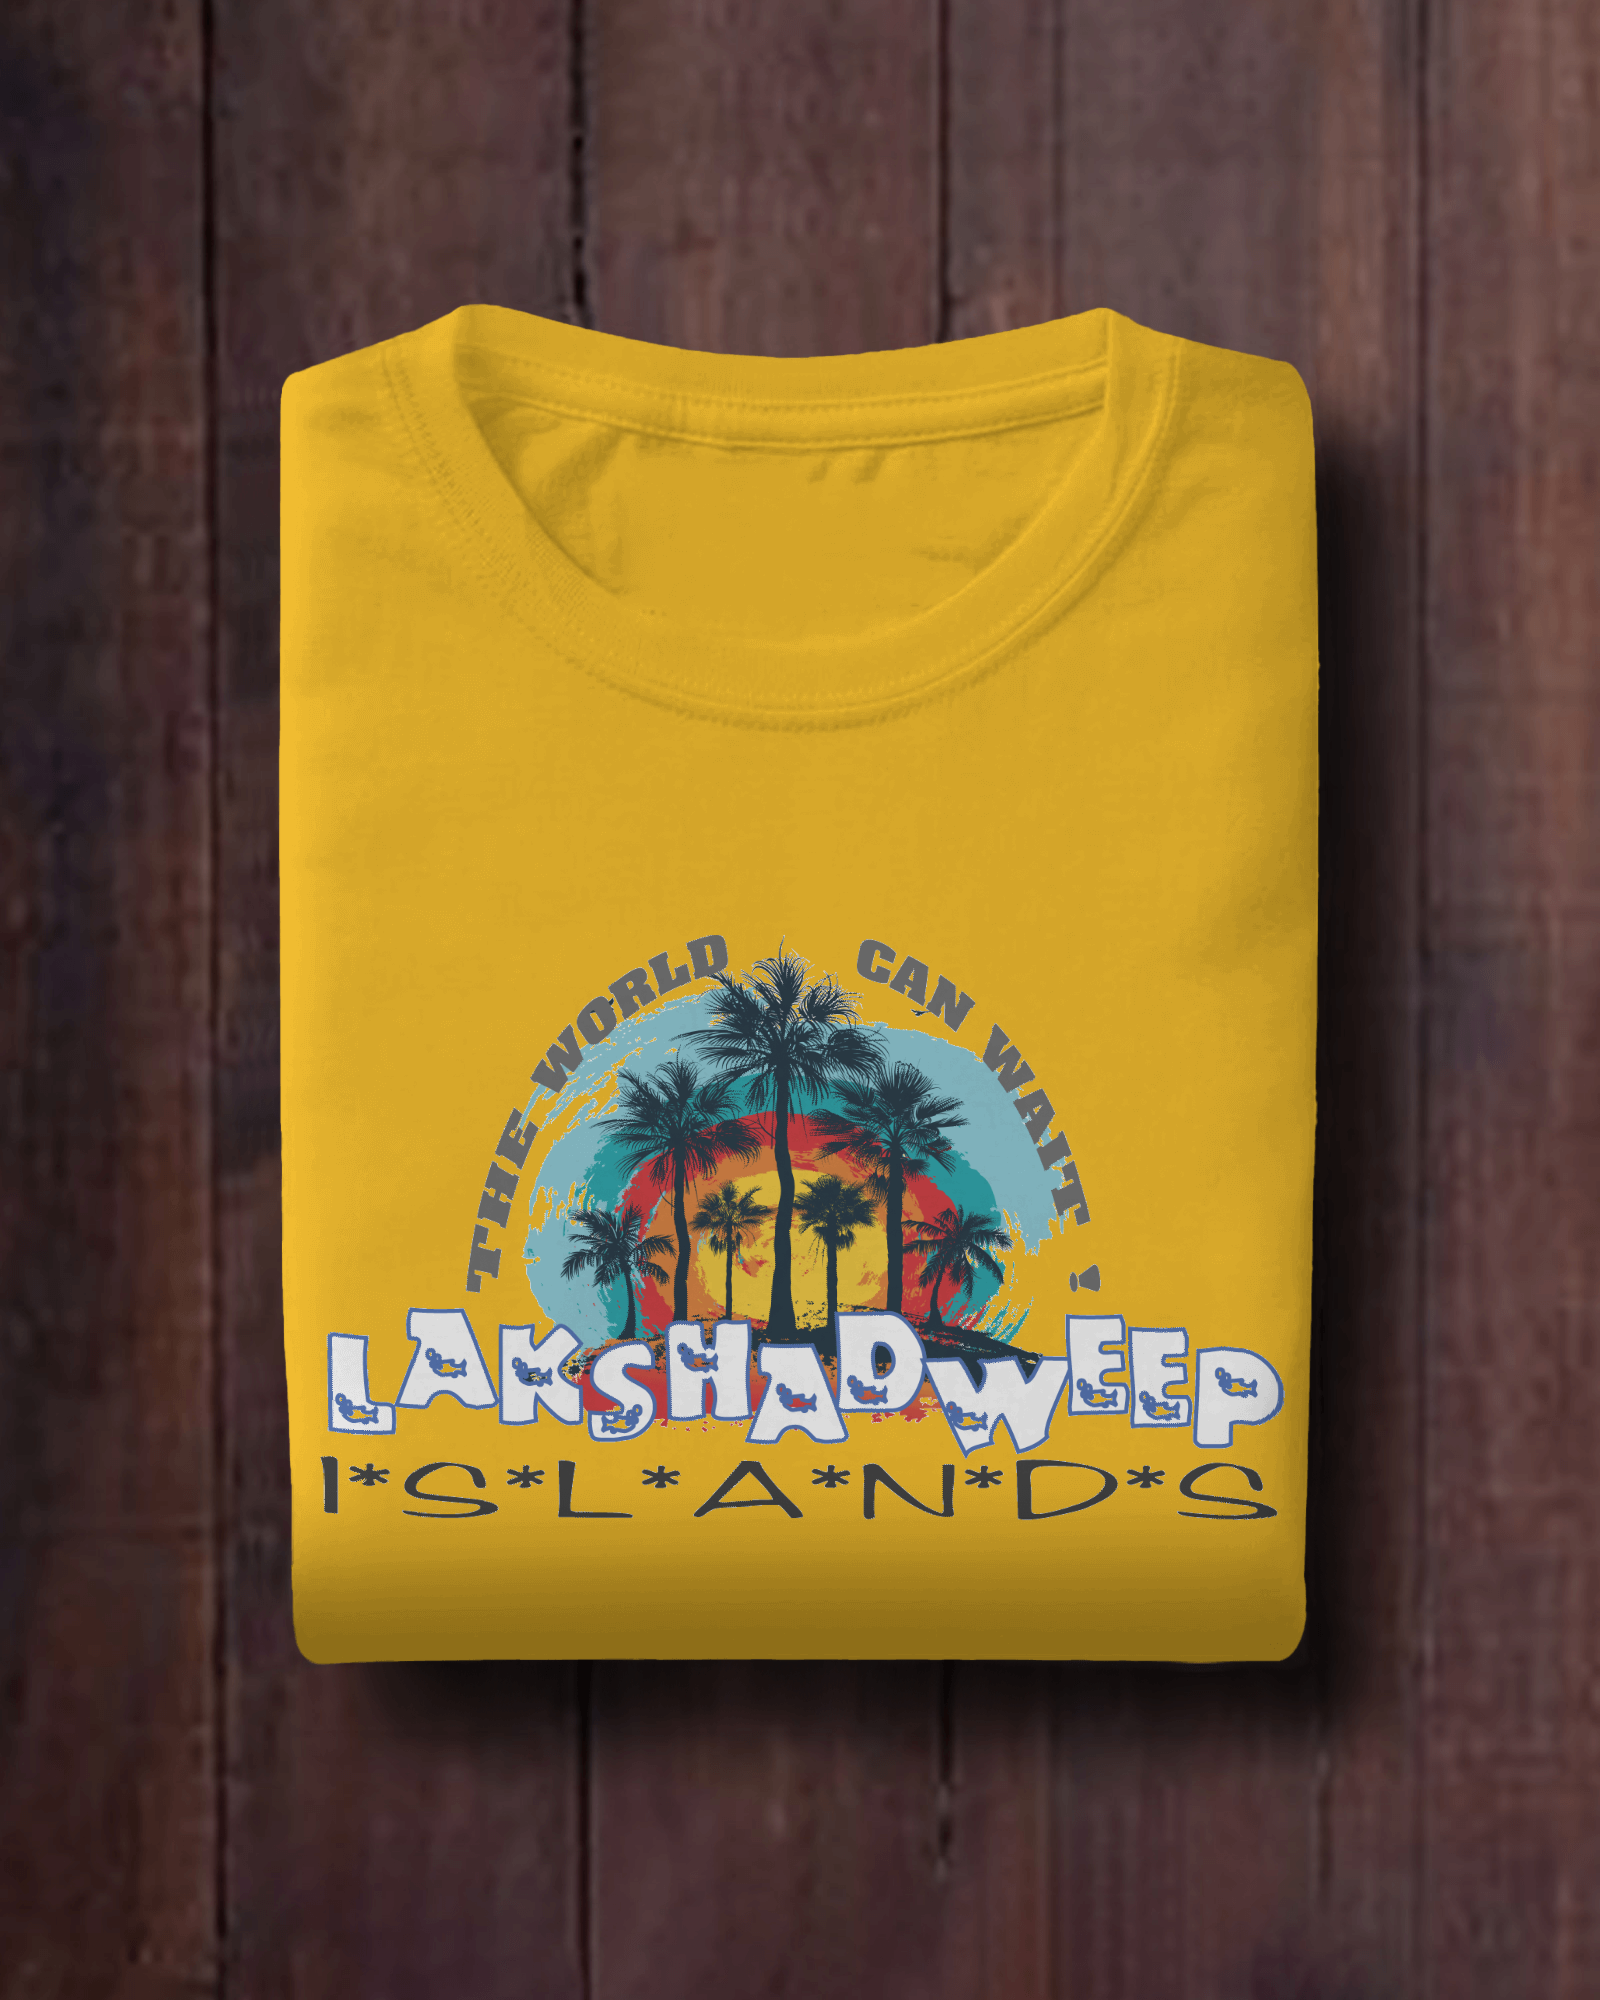 Lakshadweep summer carnival t shirt